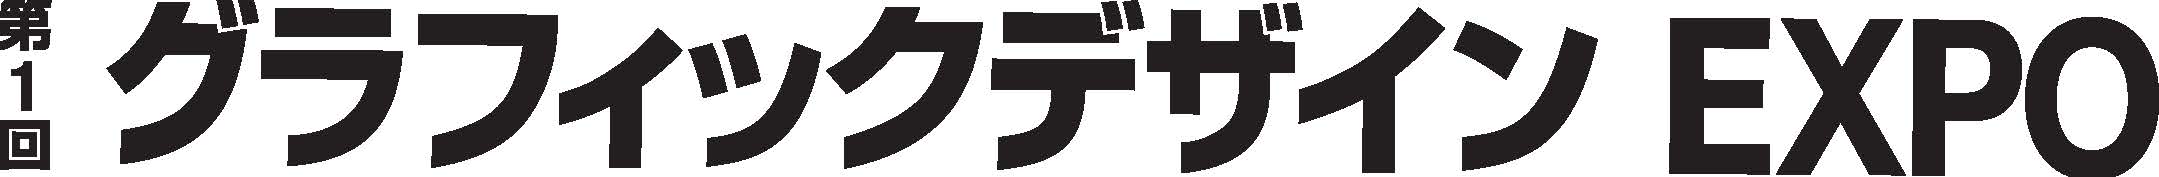 gd_logo